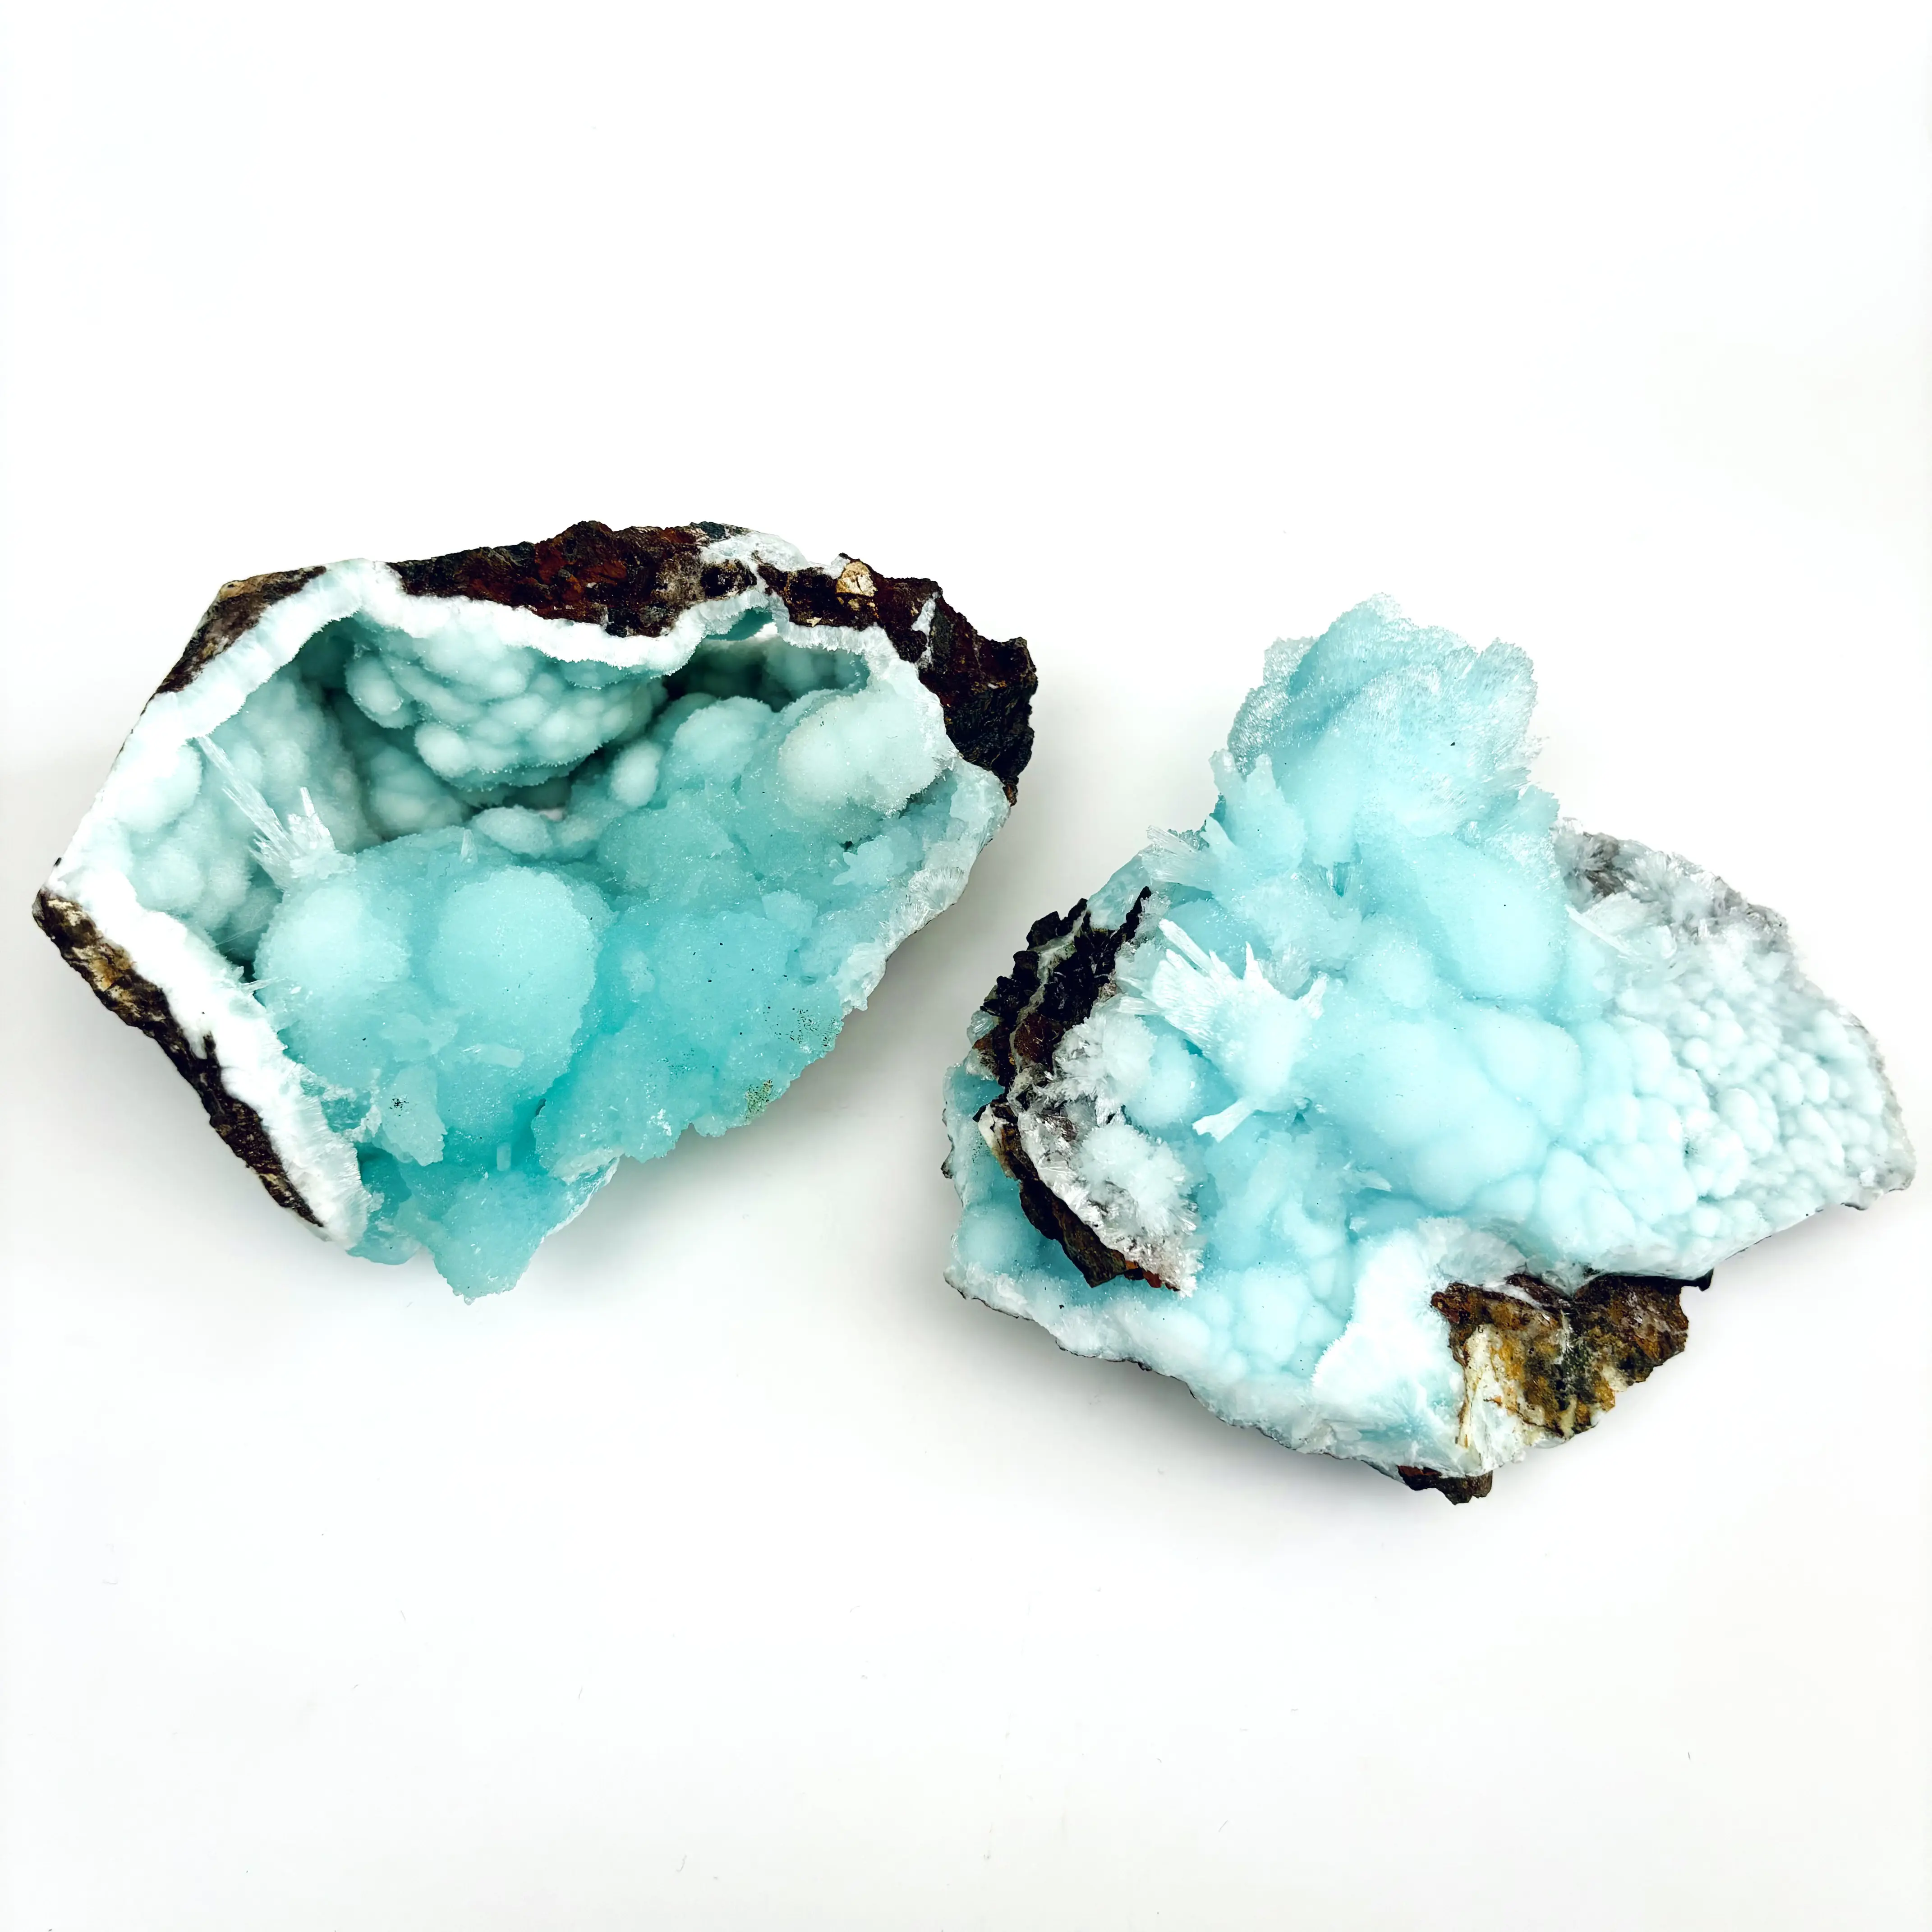 Spécimens d'aragonite bleue naturelle Pierre précieuse énergie de guérison Roches et spécimens de cristal brut avec une qualité haut de gamme